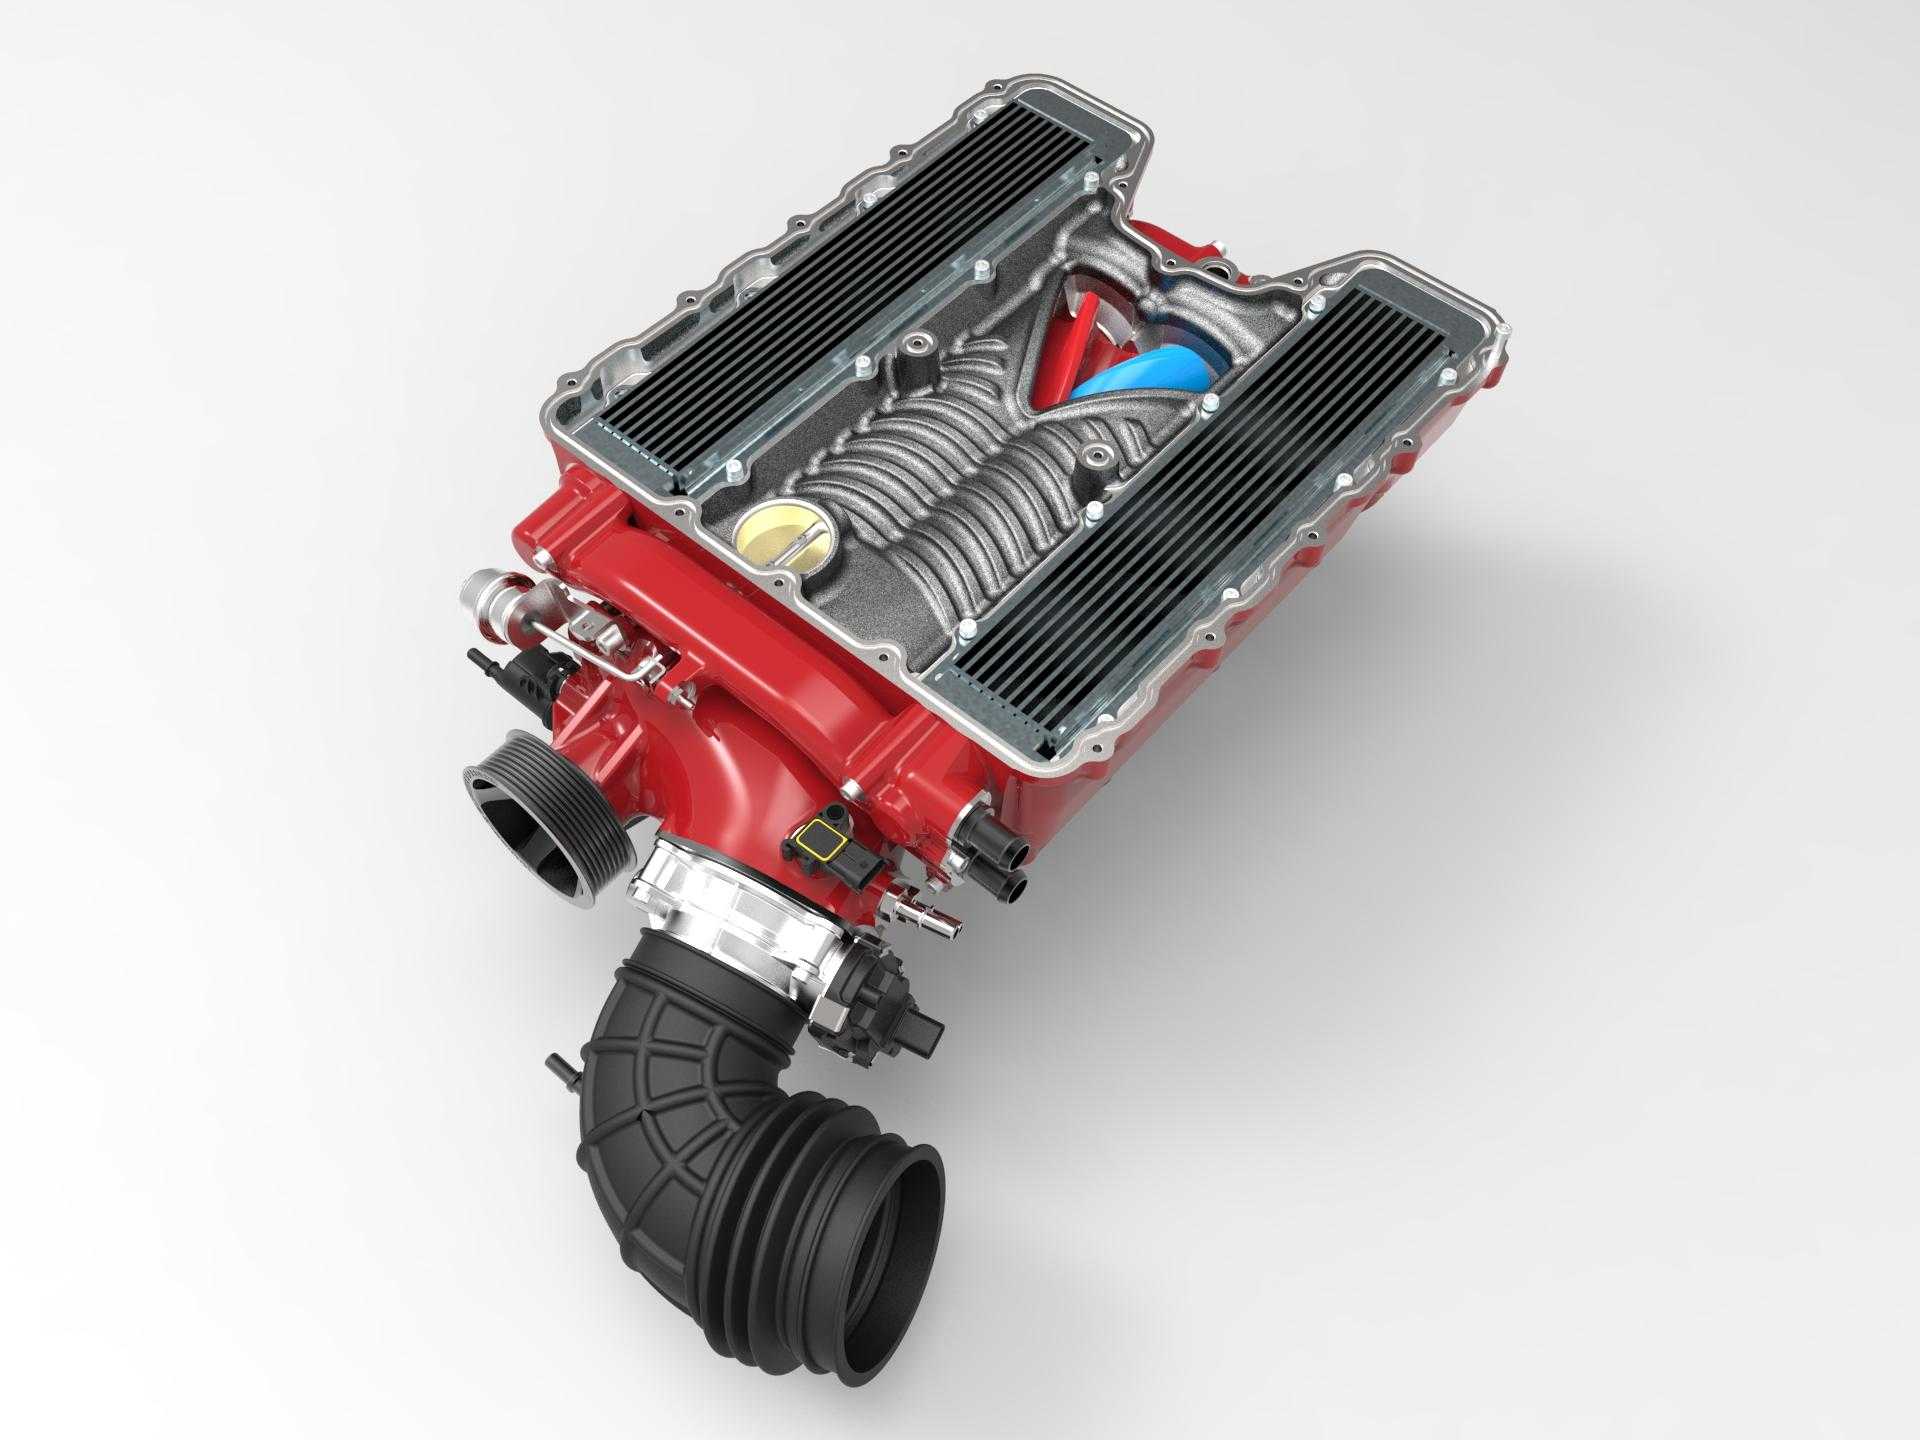 Нагнетающий компрессор. Механический нагнетатель Procharger. В8 суперчарджер. Turbo Kit lt1. Суперчарджер (Supercharger)-механический нагнетатель..